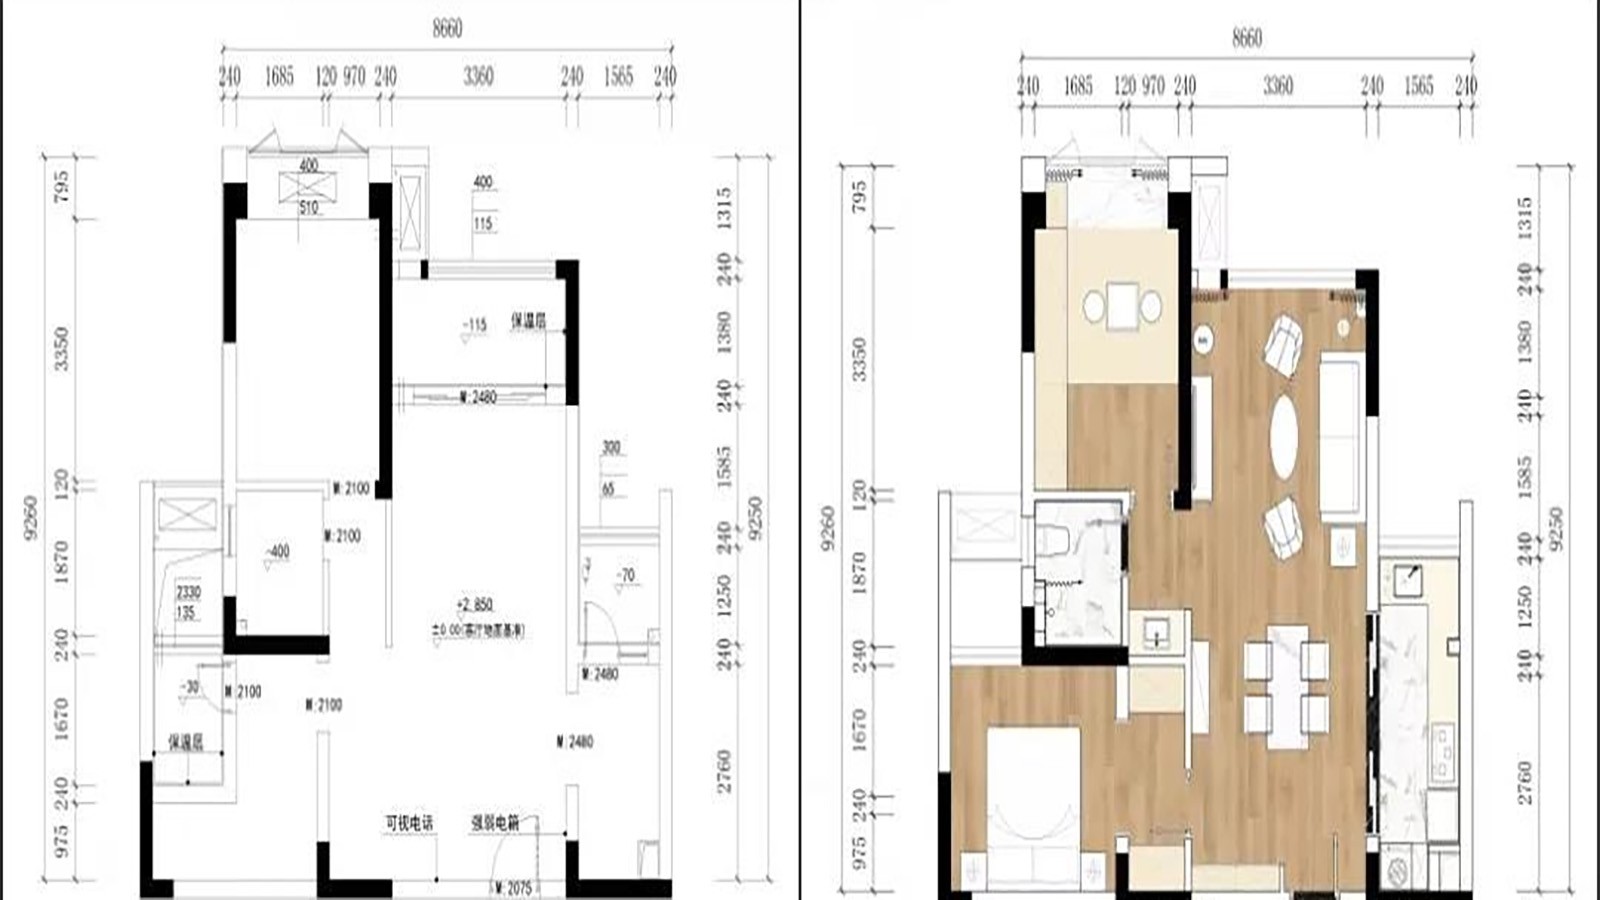 121现代四房装修效果图,万科理想城胡女士的新家装修案例效果图-美广网